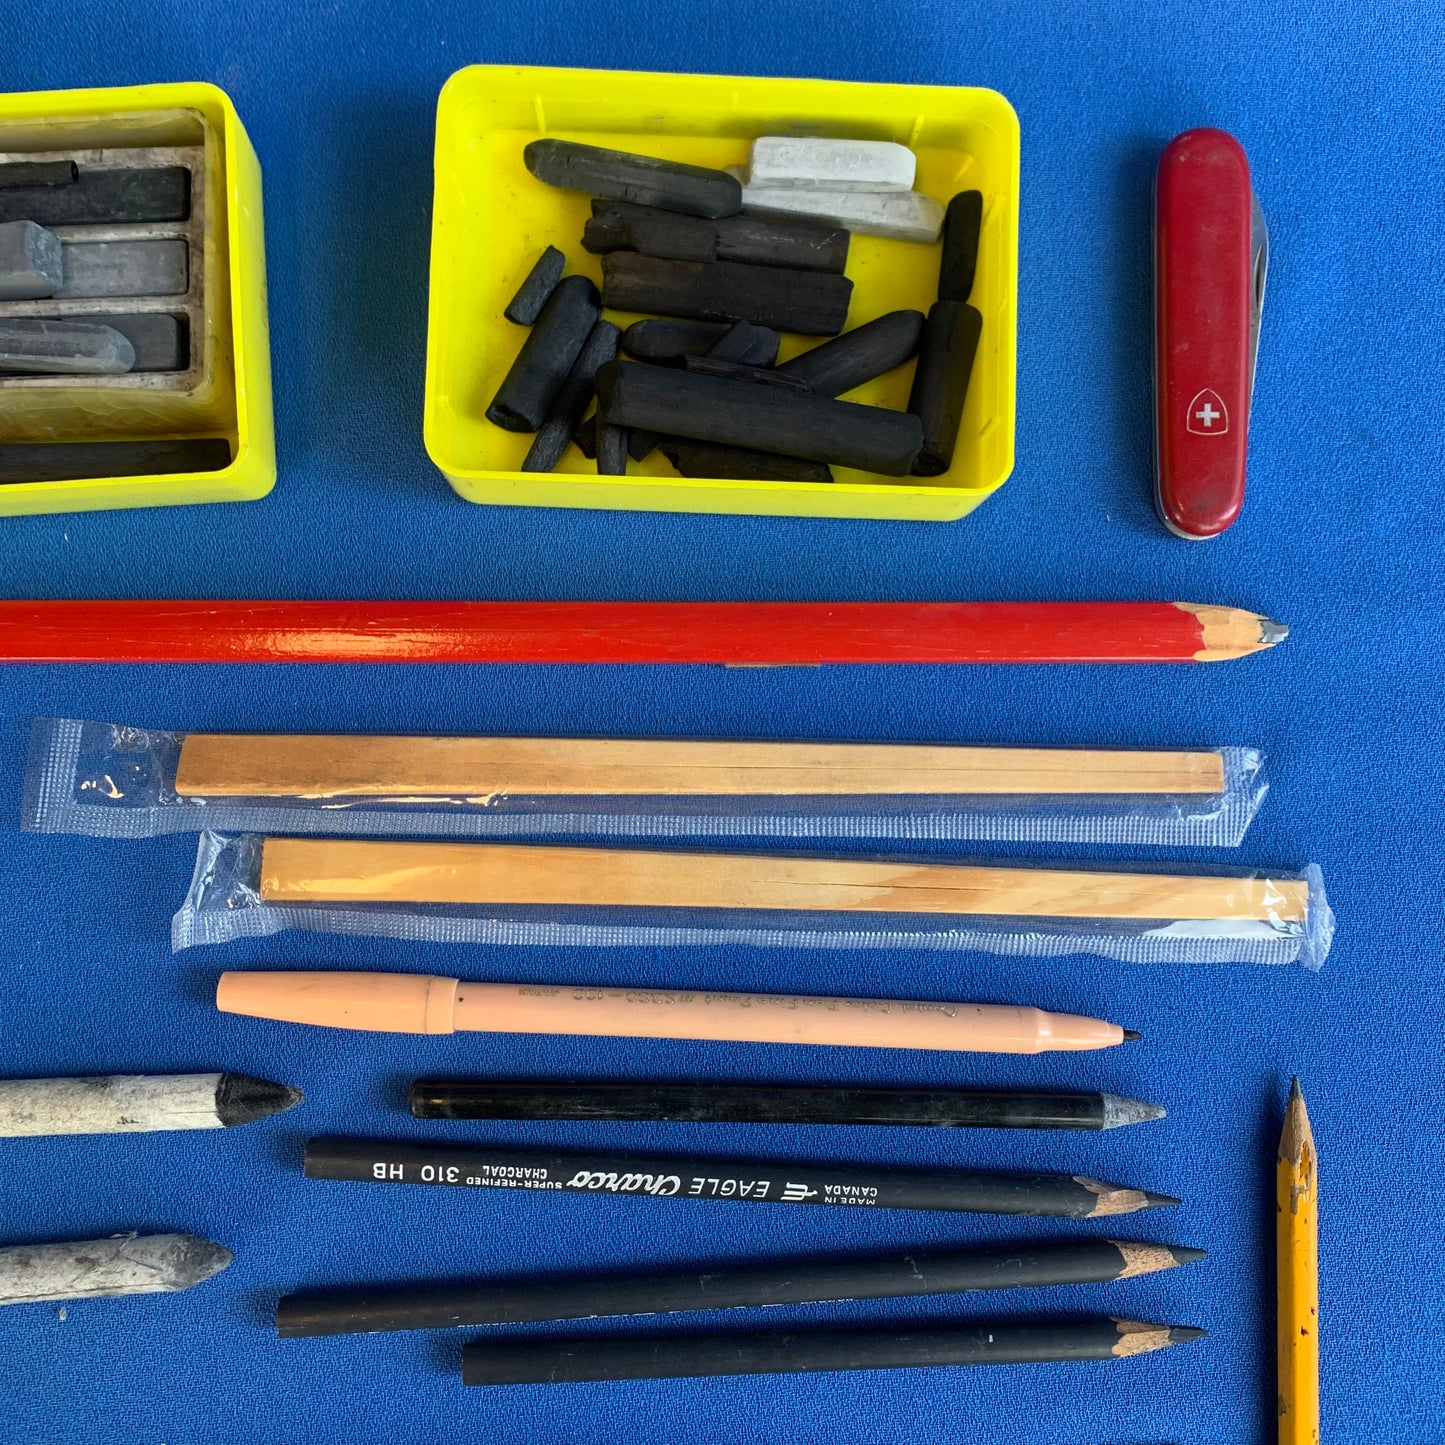 charcoal tool kit